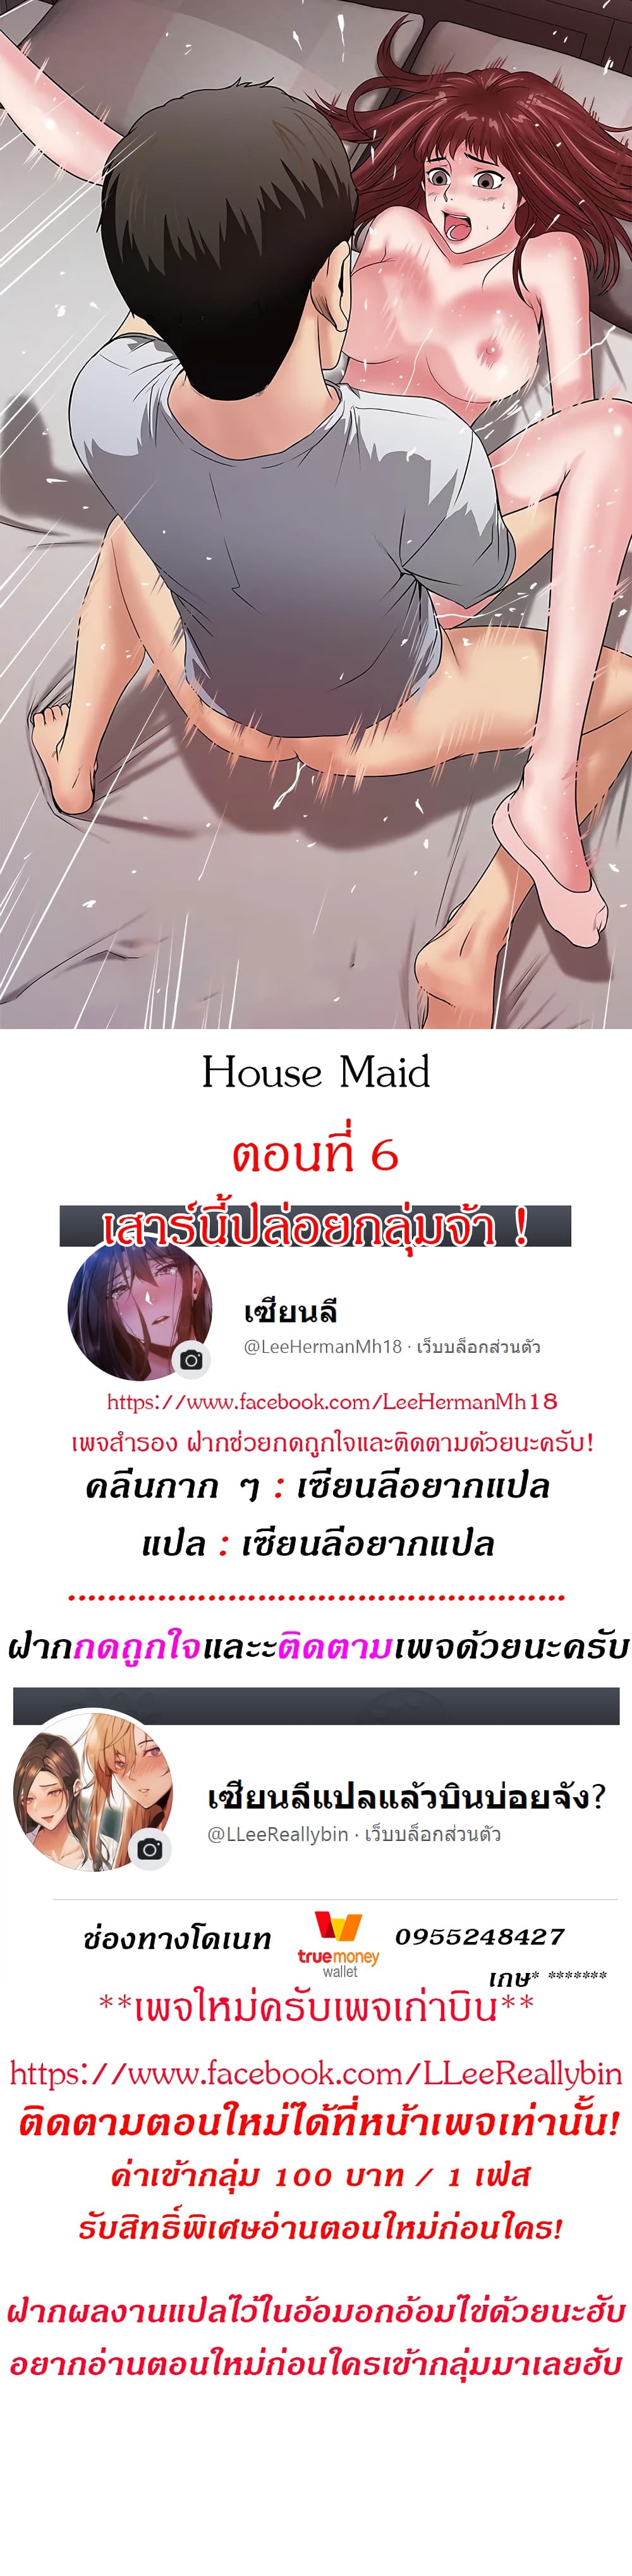 House Maid 6-6